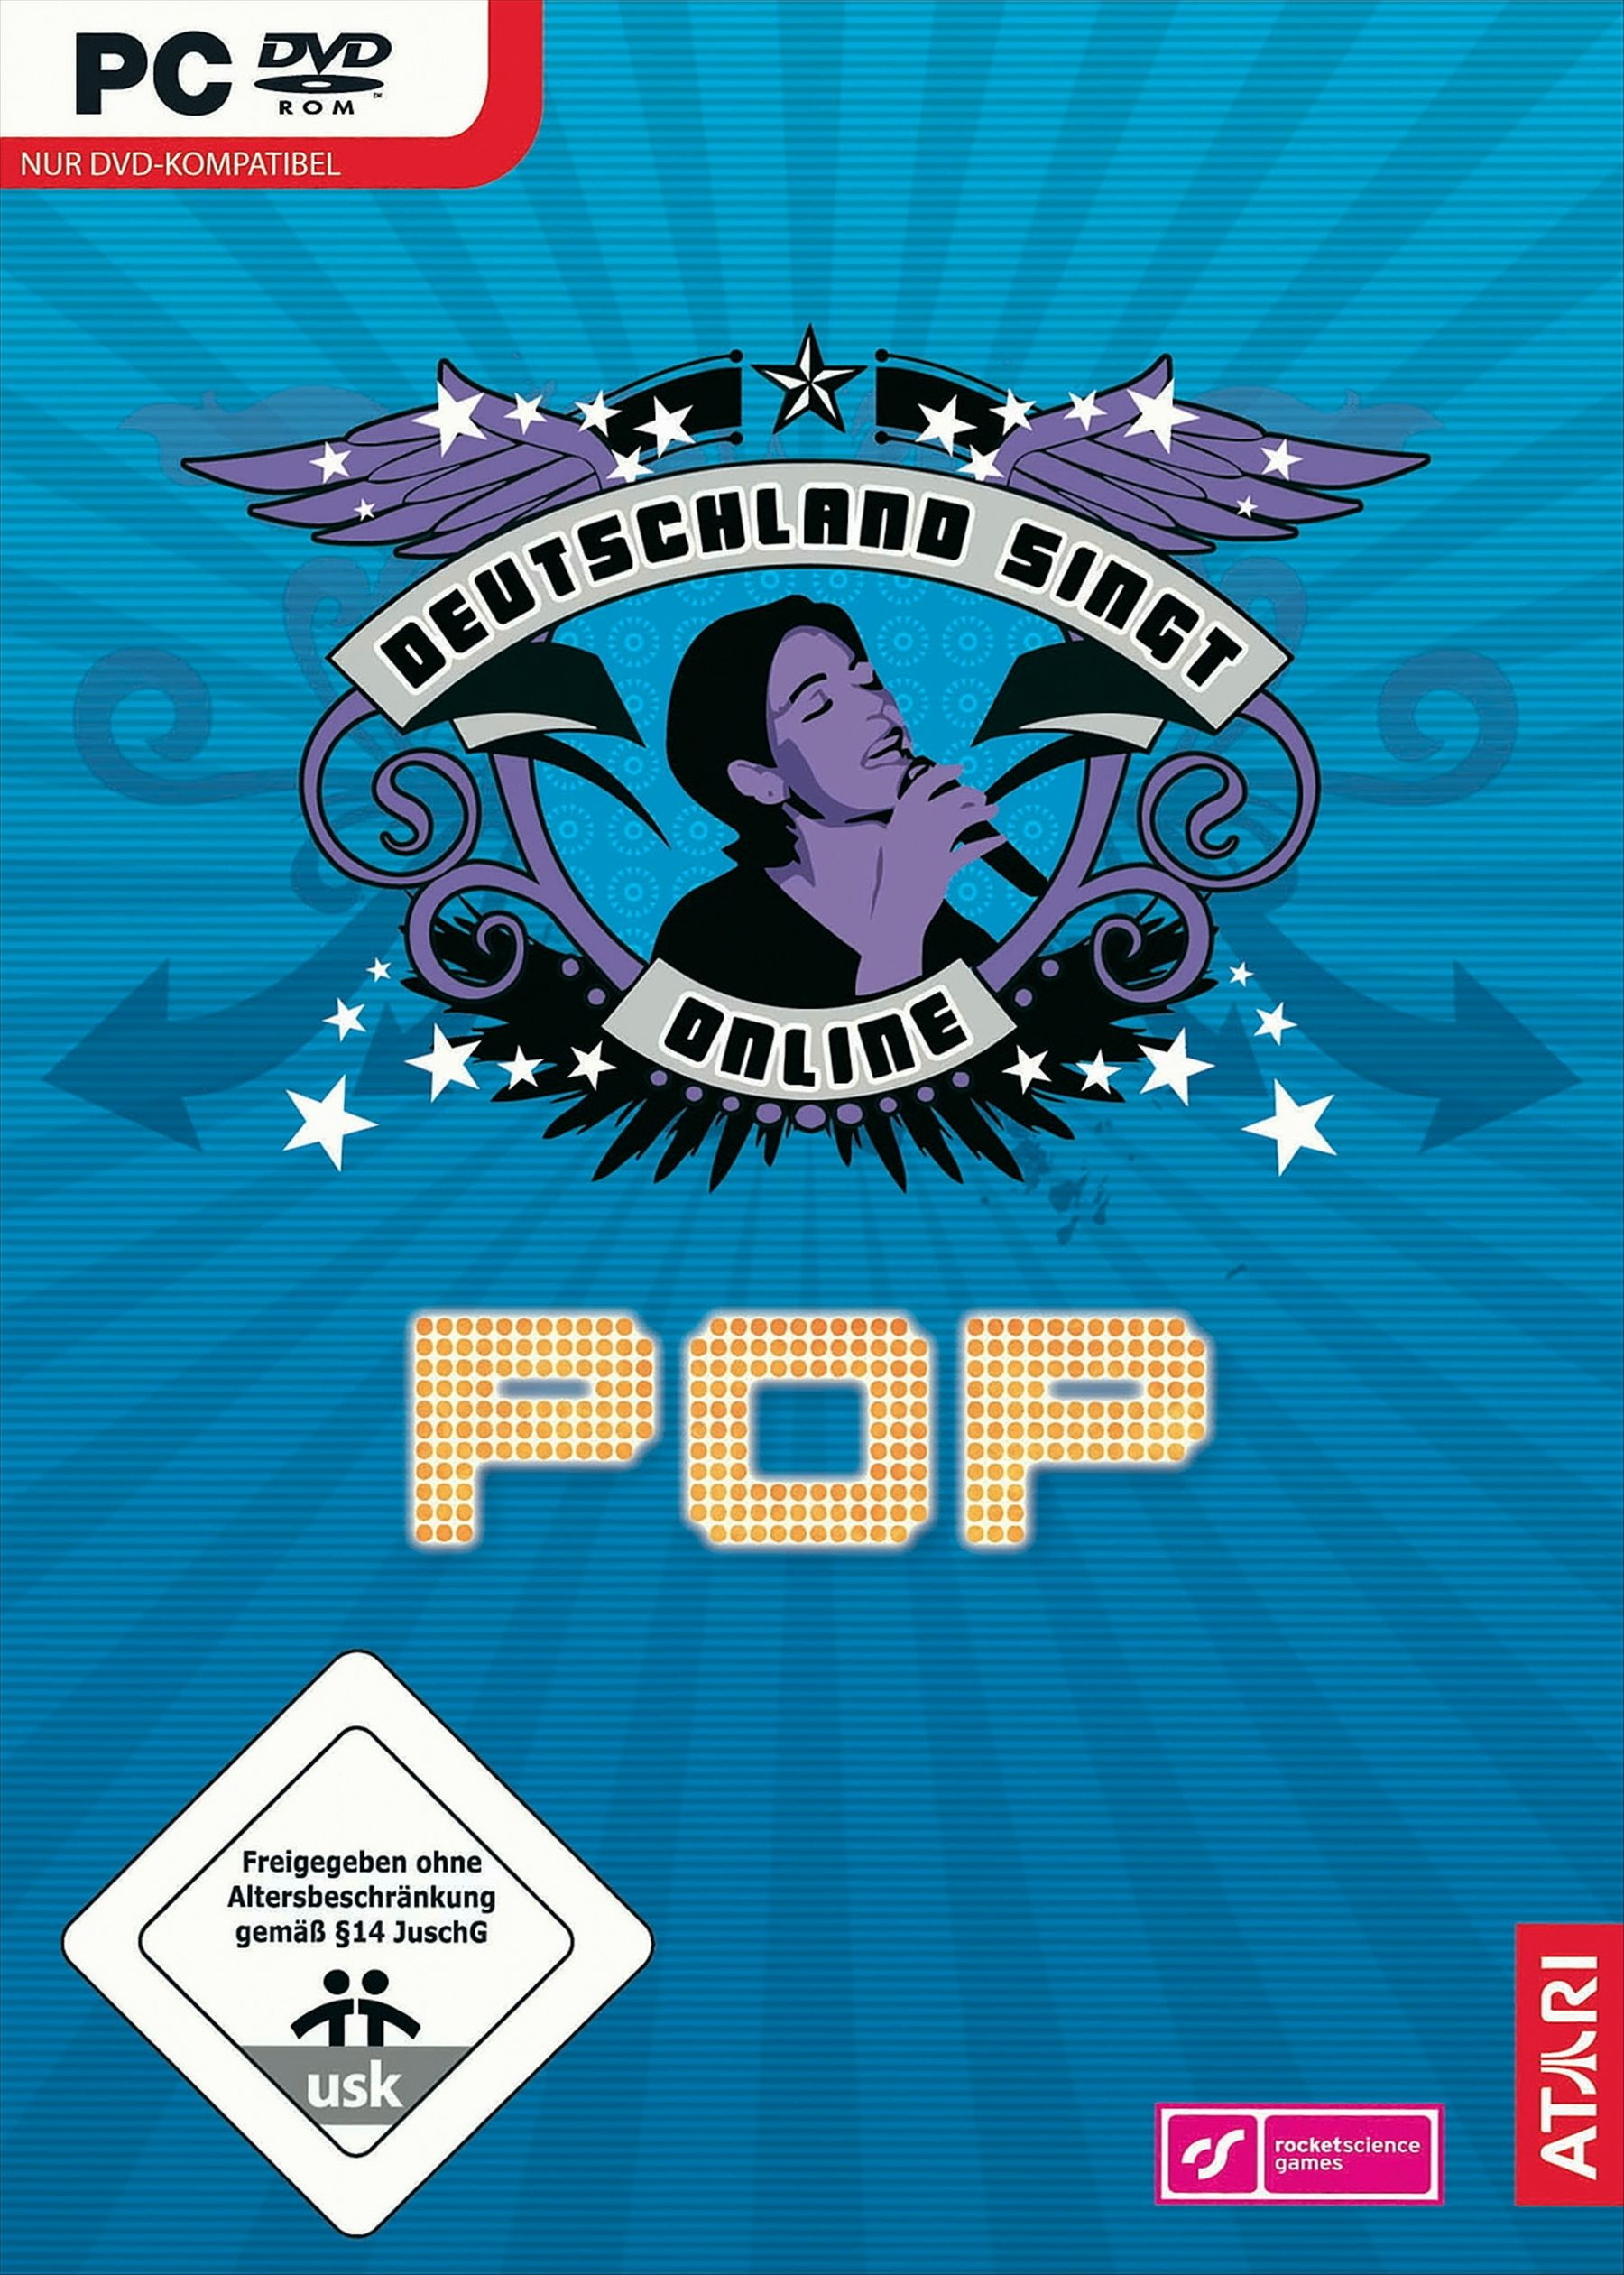 Pop [PC] - Deutschland Online: singt